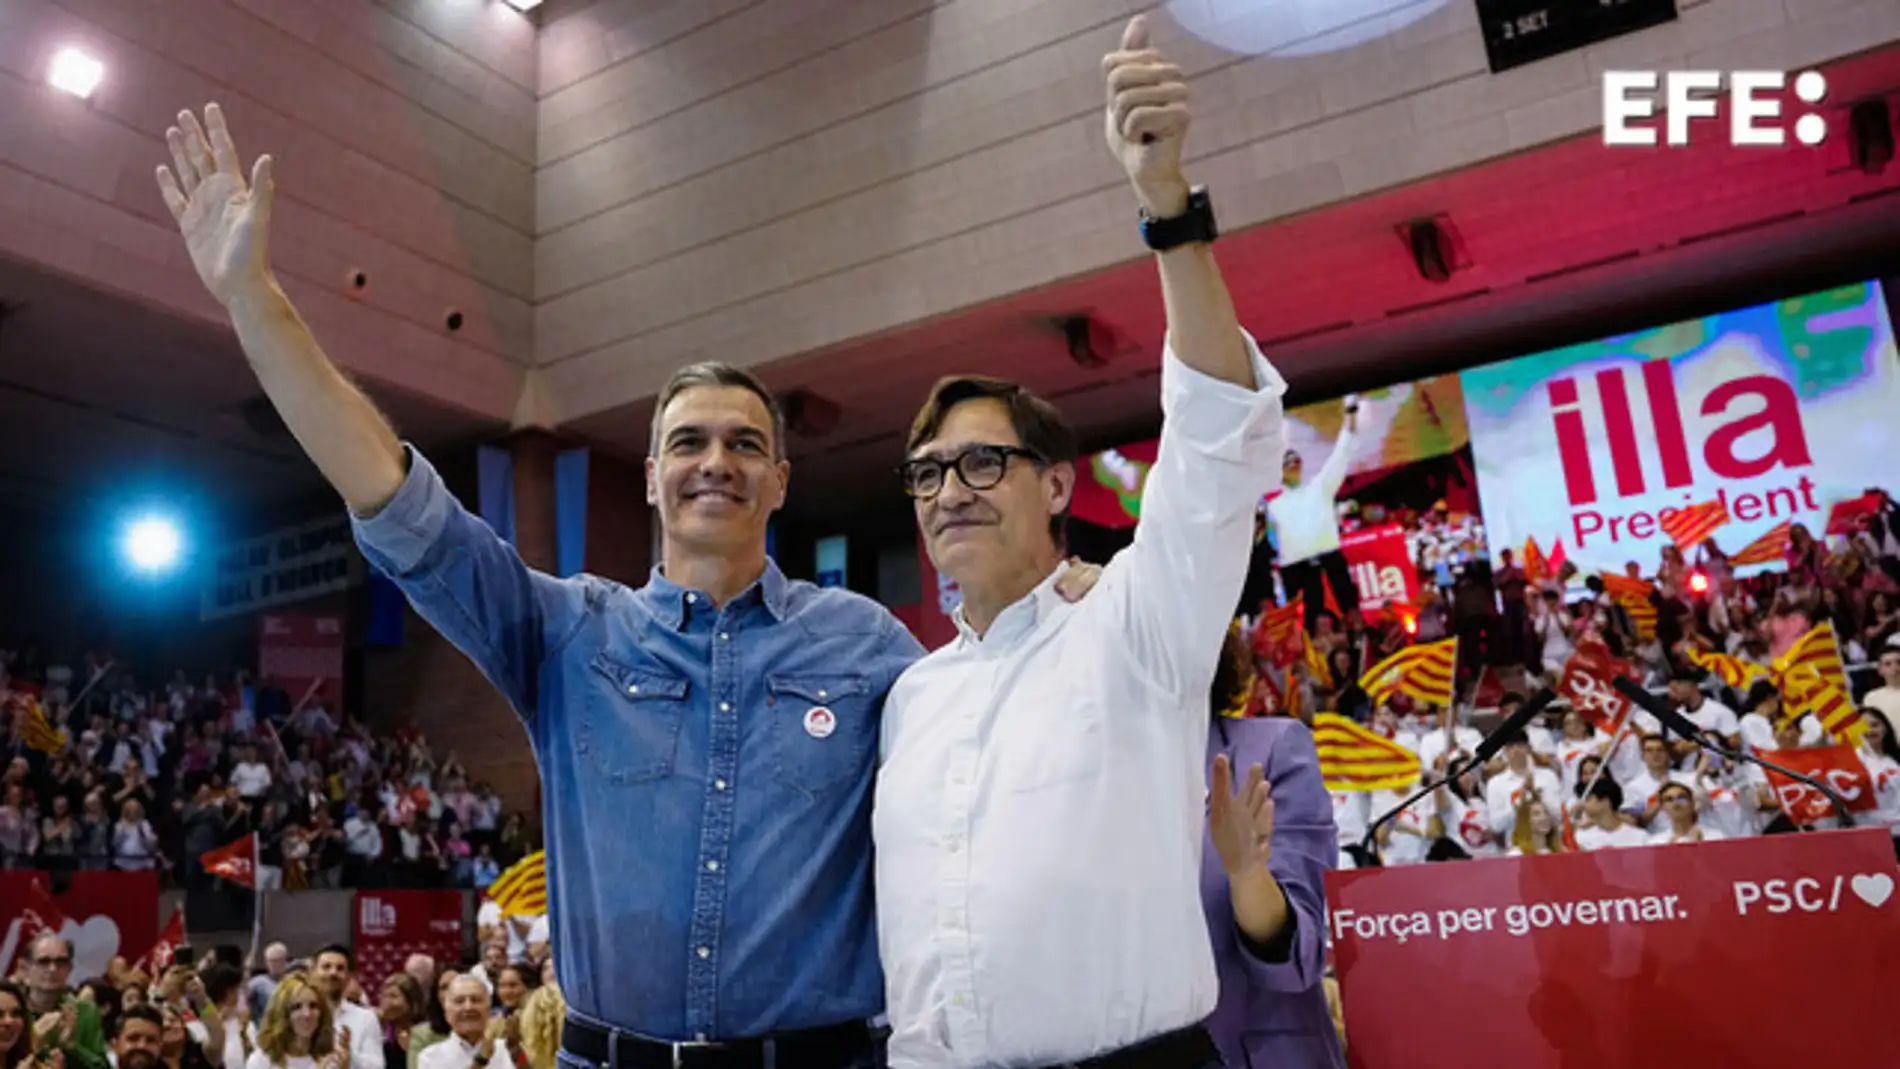 El PSOE sale en bloque a reivindicar a Illa tras la intención de Puigdemont de ser investido